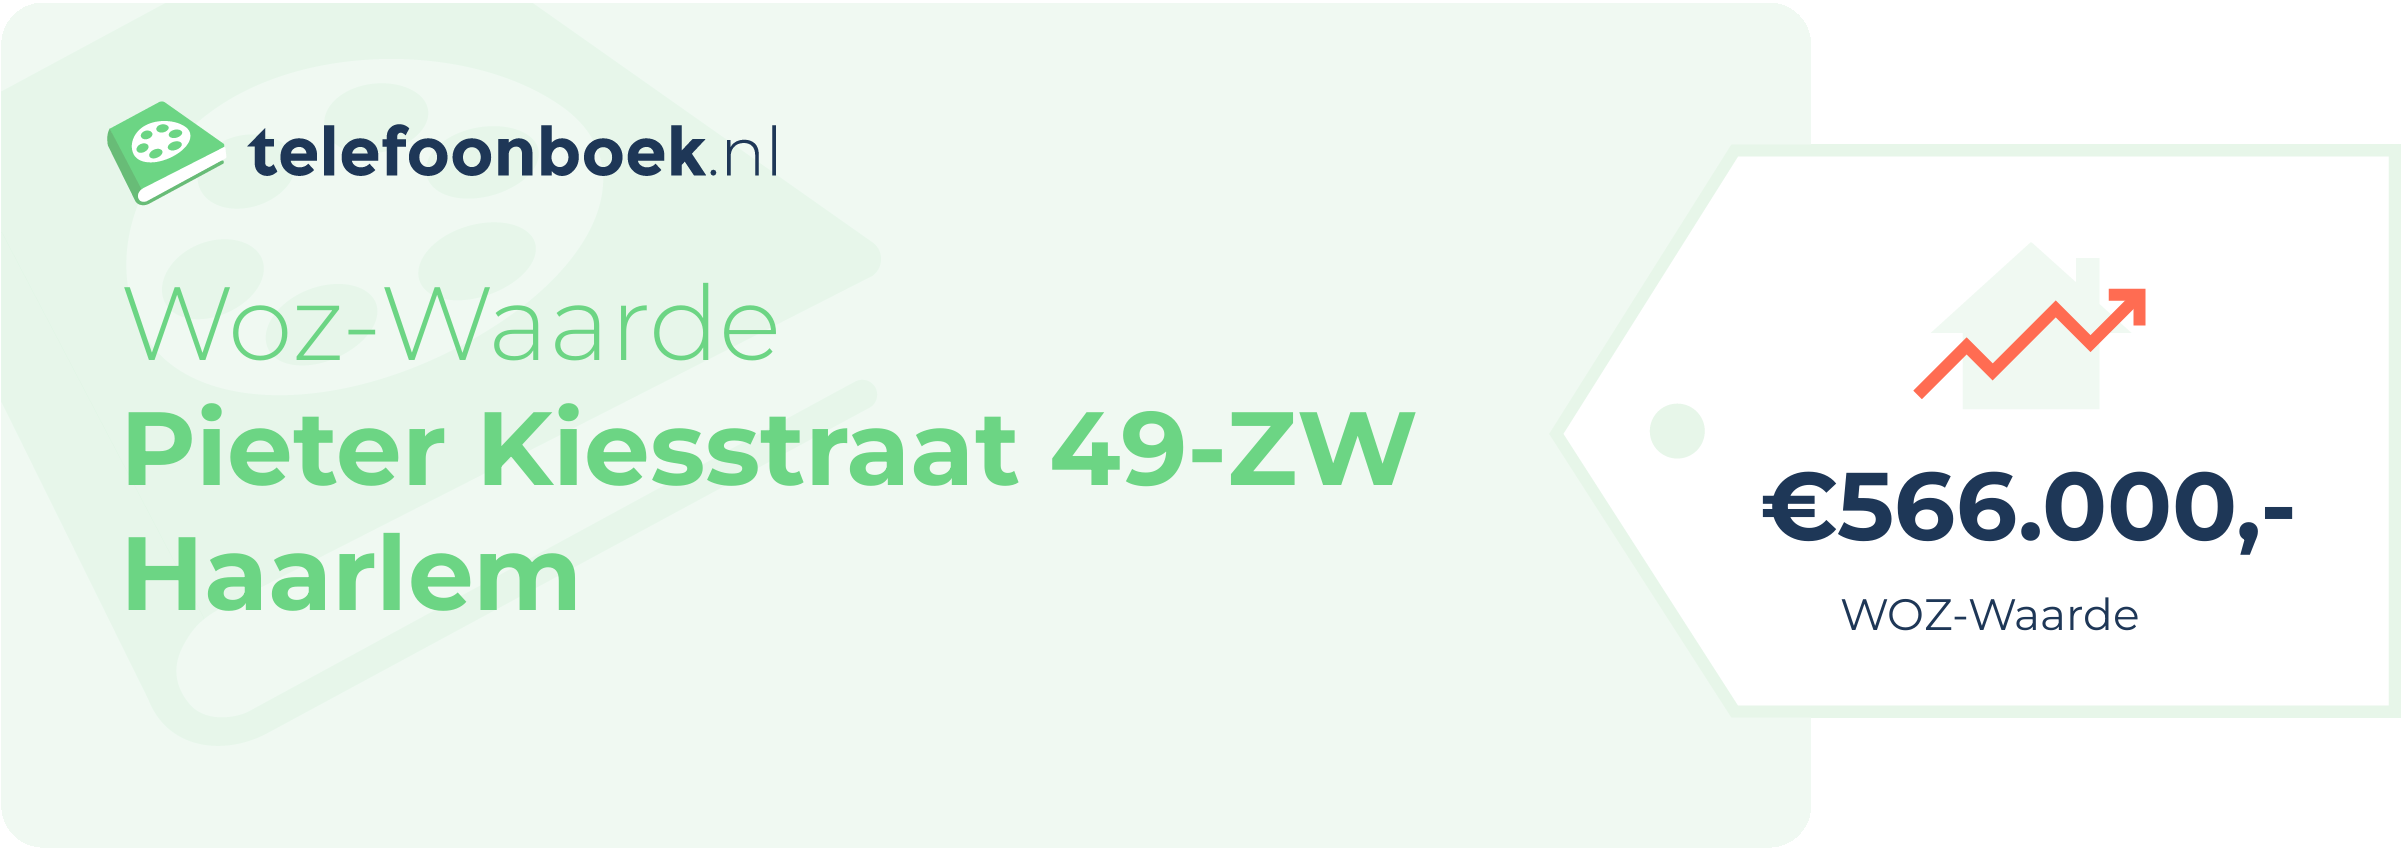 WOZ-waarde Pieter Kiesstraat 49-ZW Haarlem